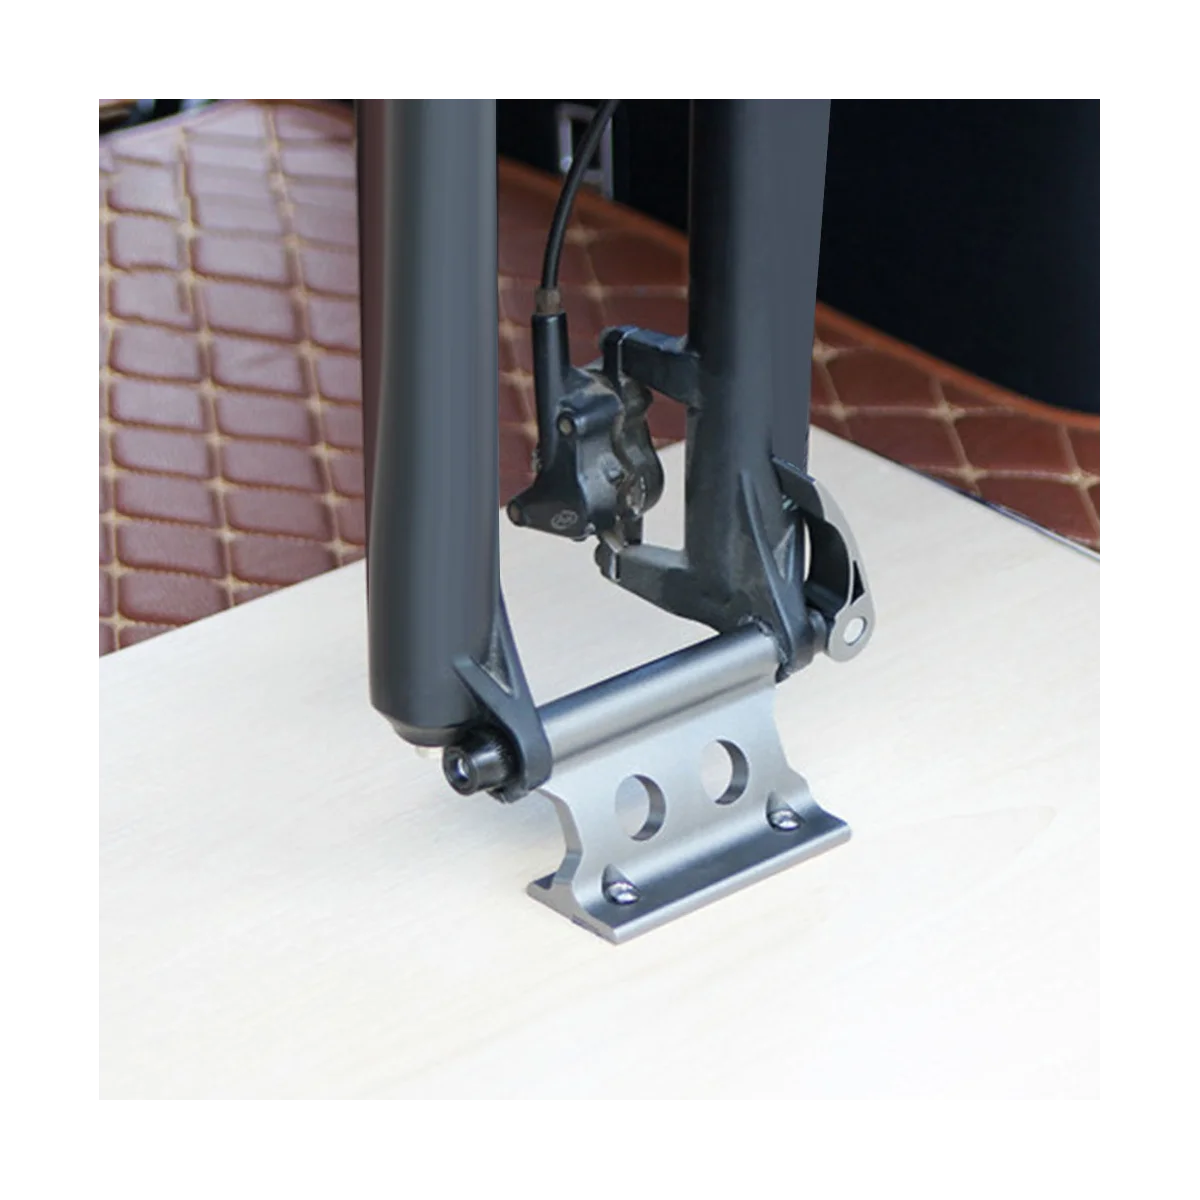 

Передняя вилка велосипеда быстросъемный удерживающий зажим разборный зажим для крепления портативная деталь для велоспорта желтая